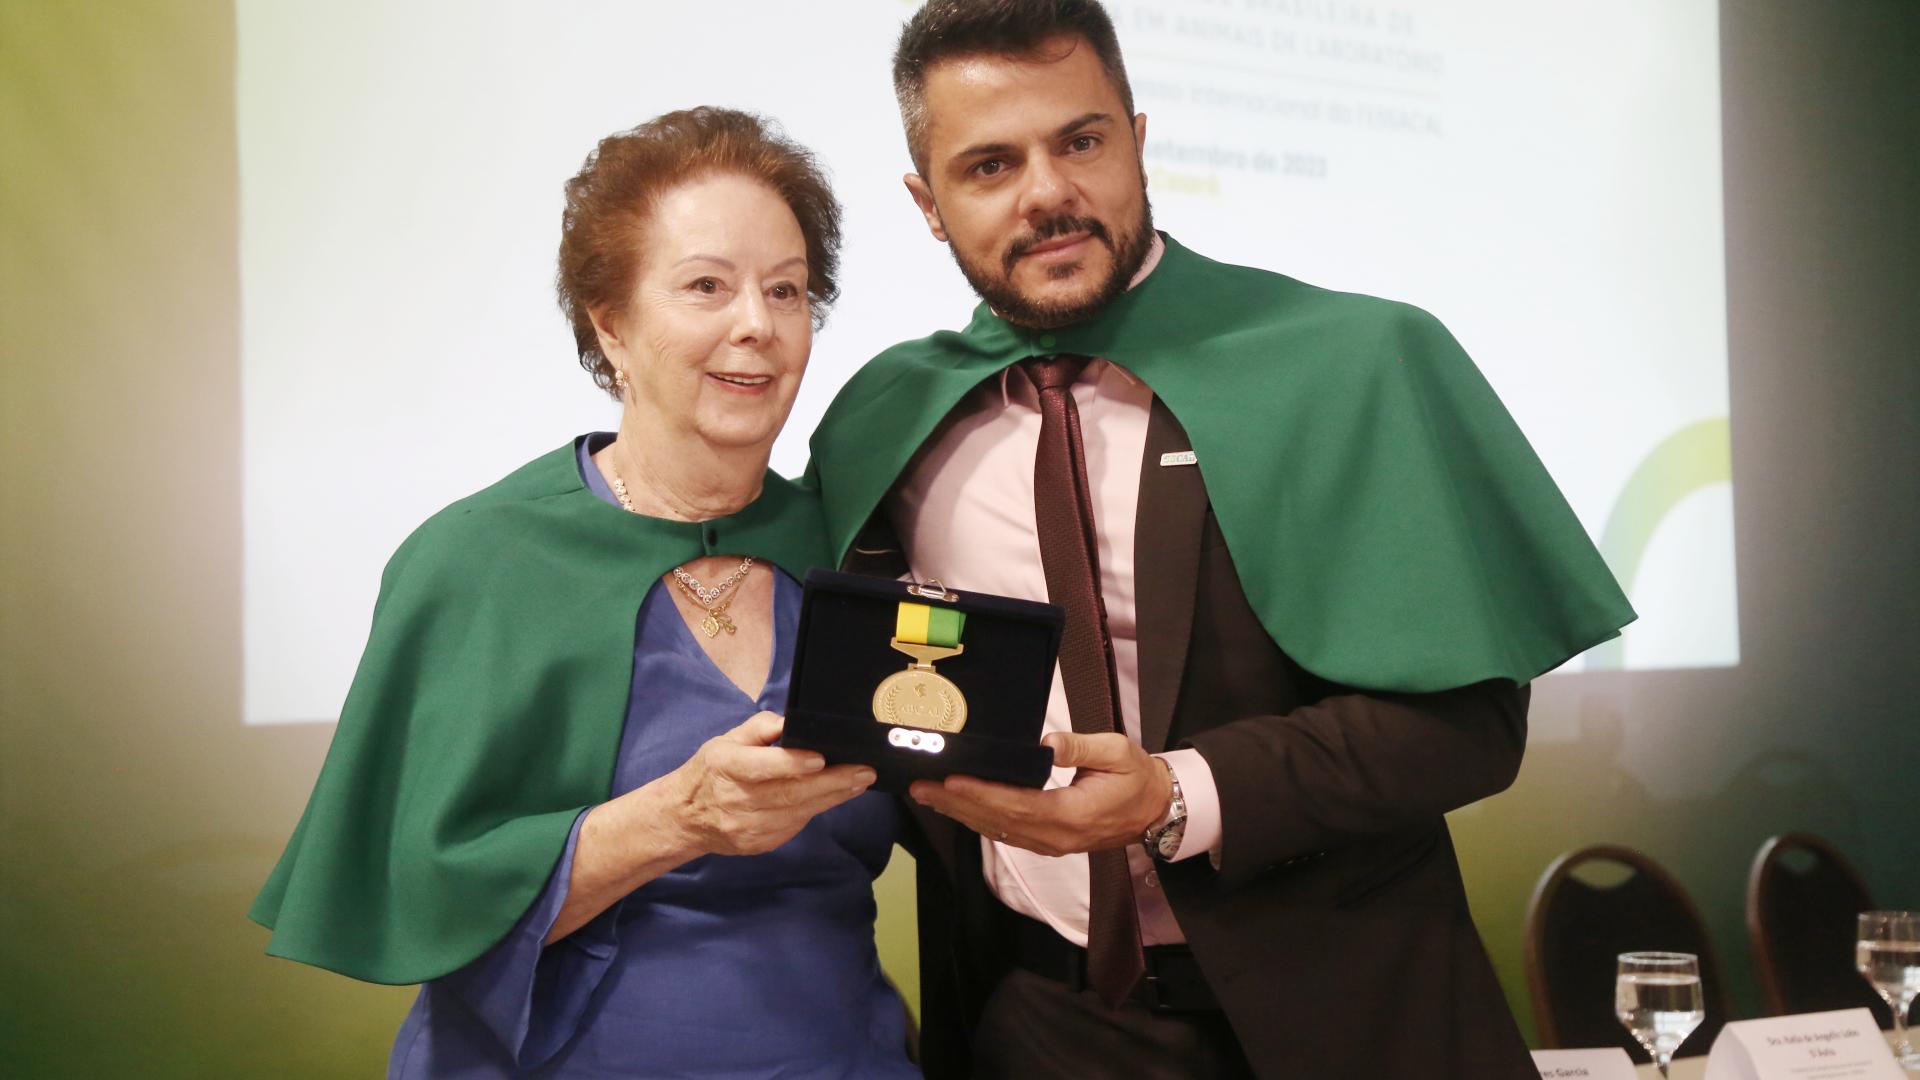 Foto colorida traz Ekaterina, patrona da cadeira 1, entregando a medalha de acadêmico para Murilo, patrono da cadeira 4